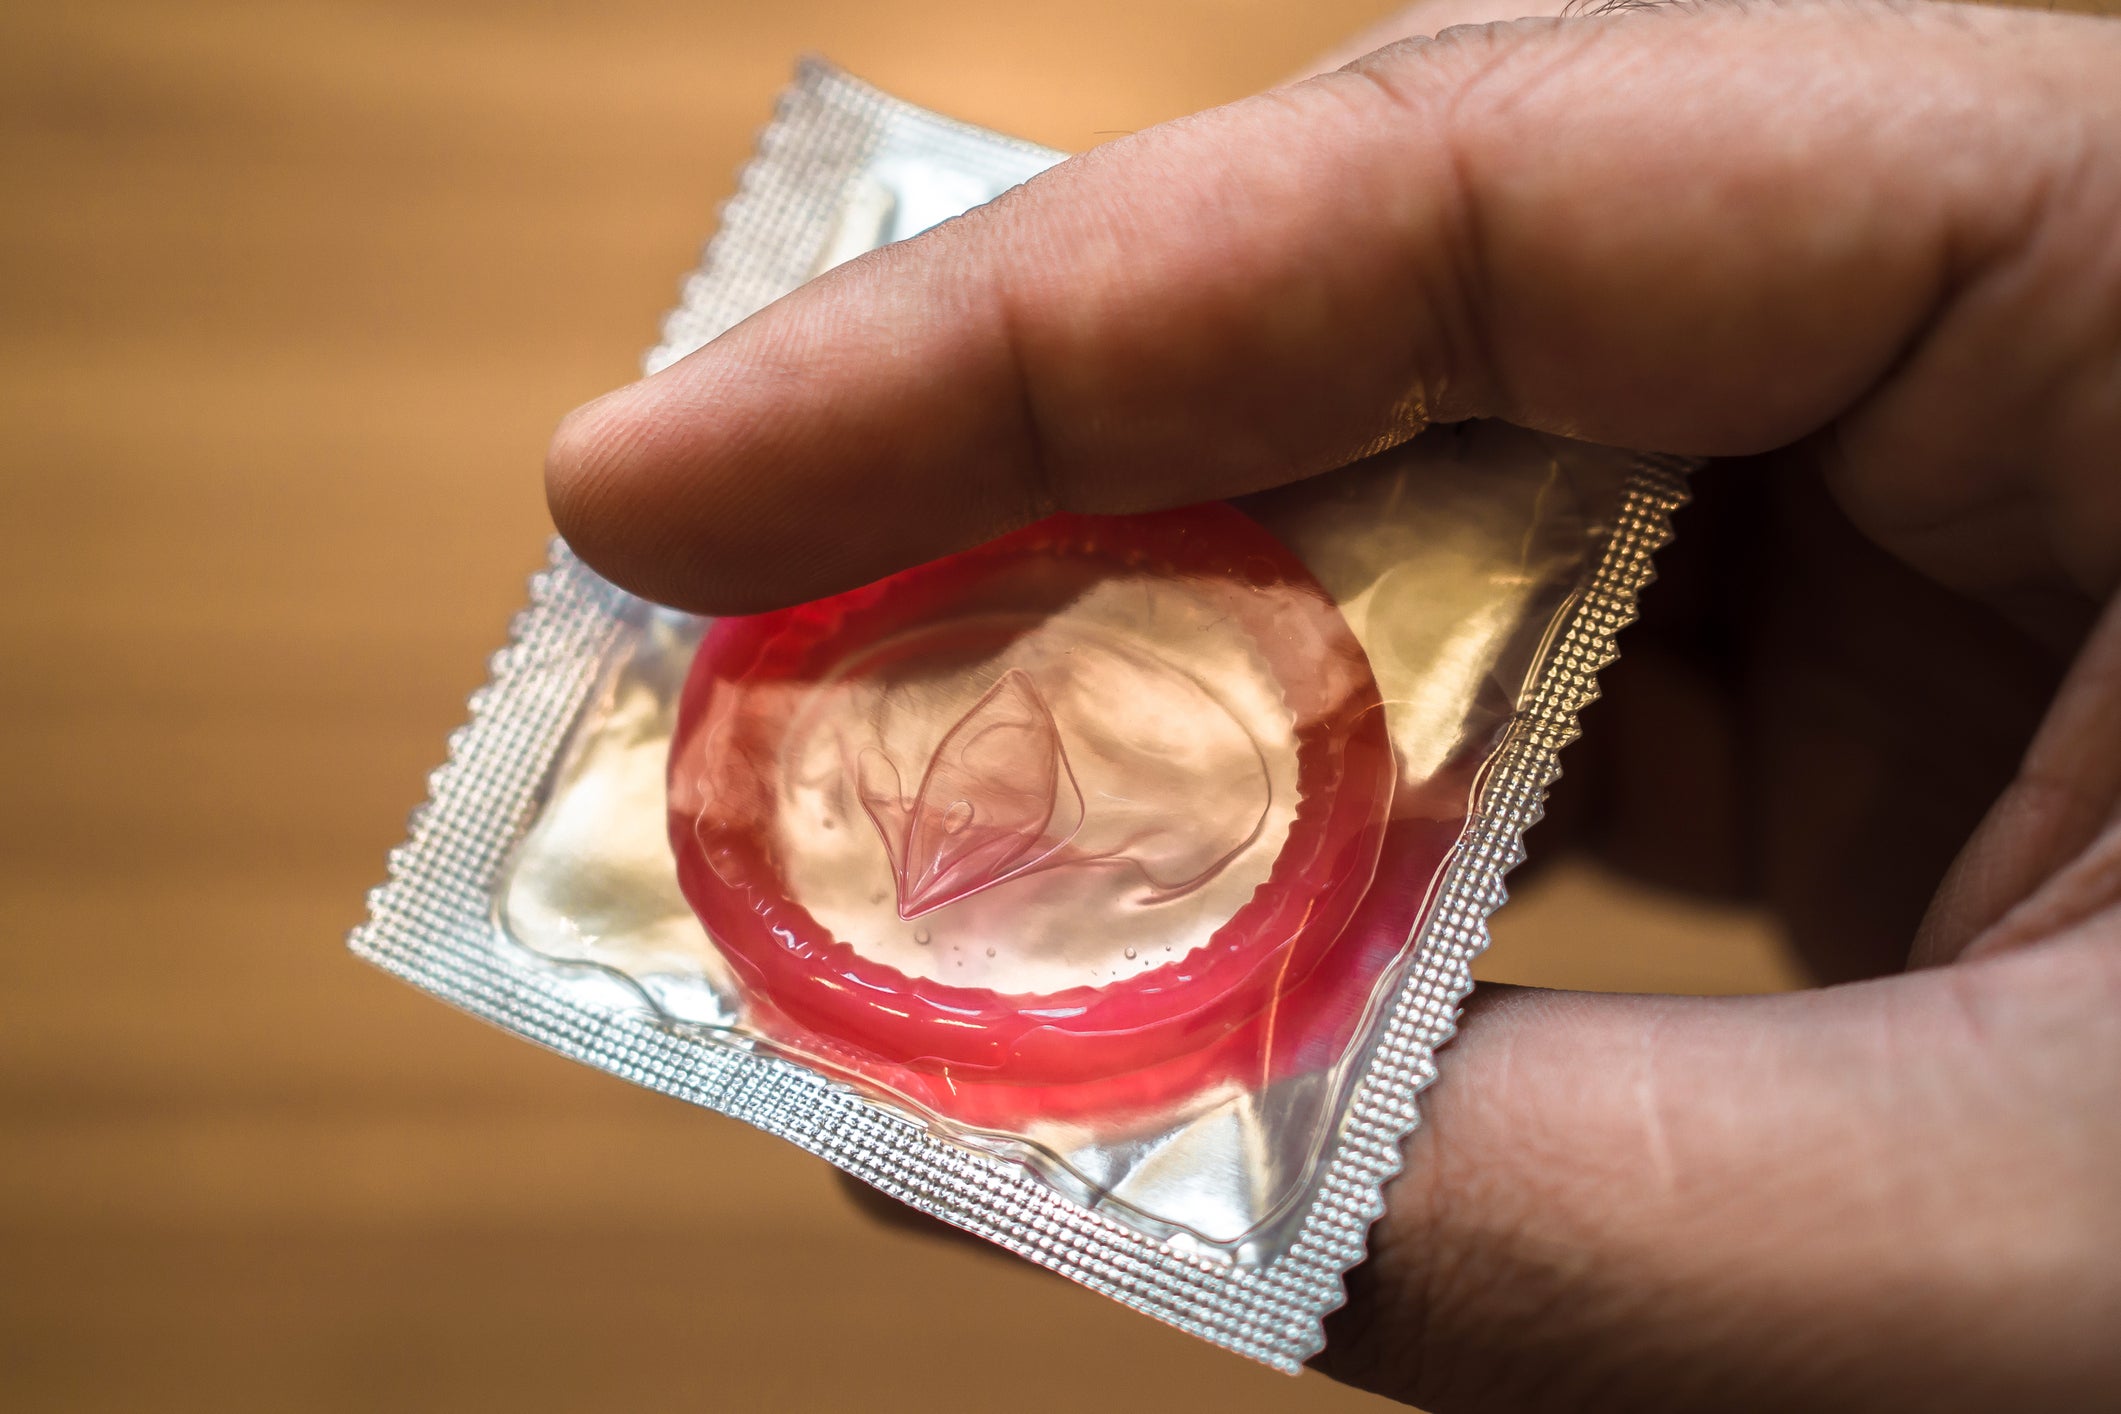 girlfriend took my condom off forum